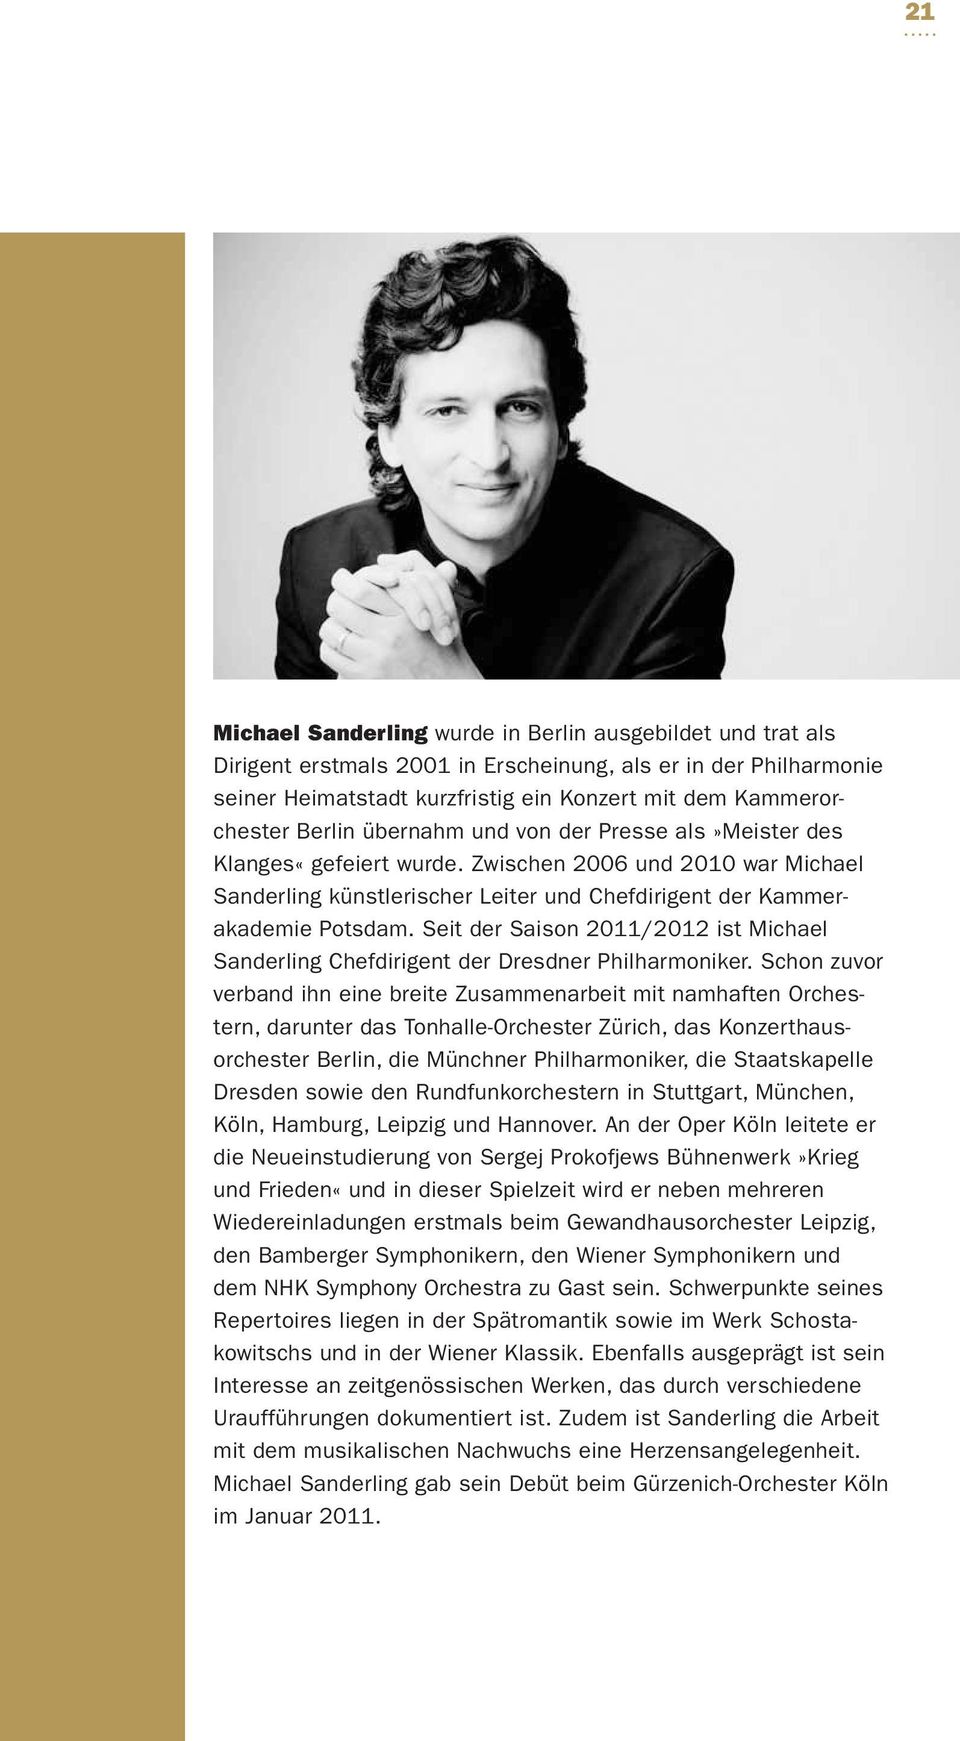 Seit der Saison 2011/2012 ist Michael Sanderling Chef dirigent der Dresdner Philharmoniker.